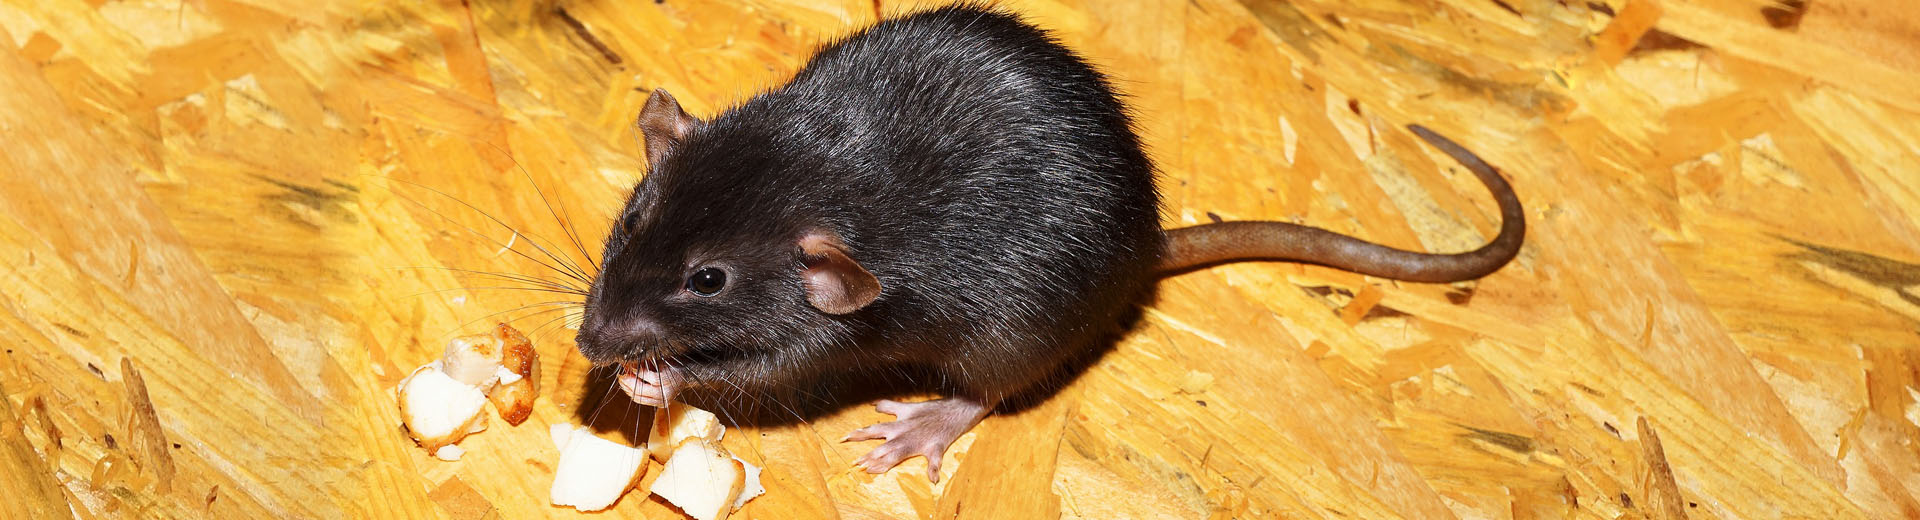 Lebendfalle für Ratten und Siebenschläfer